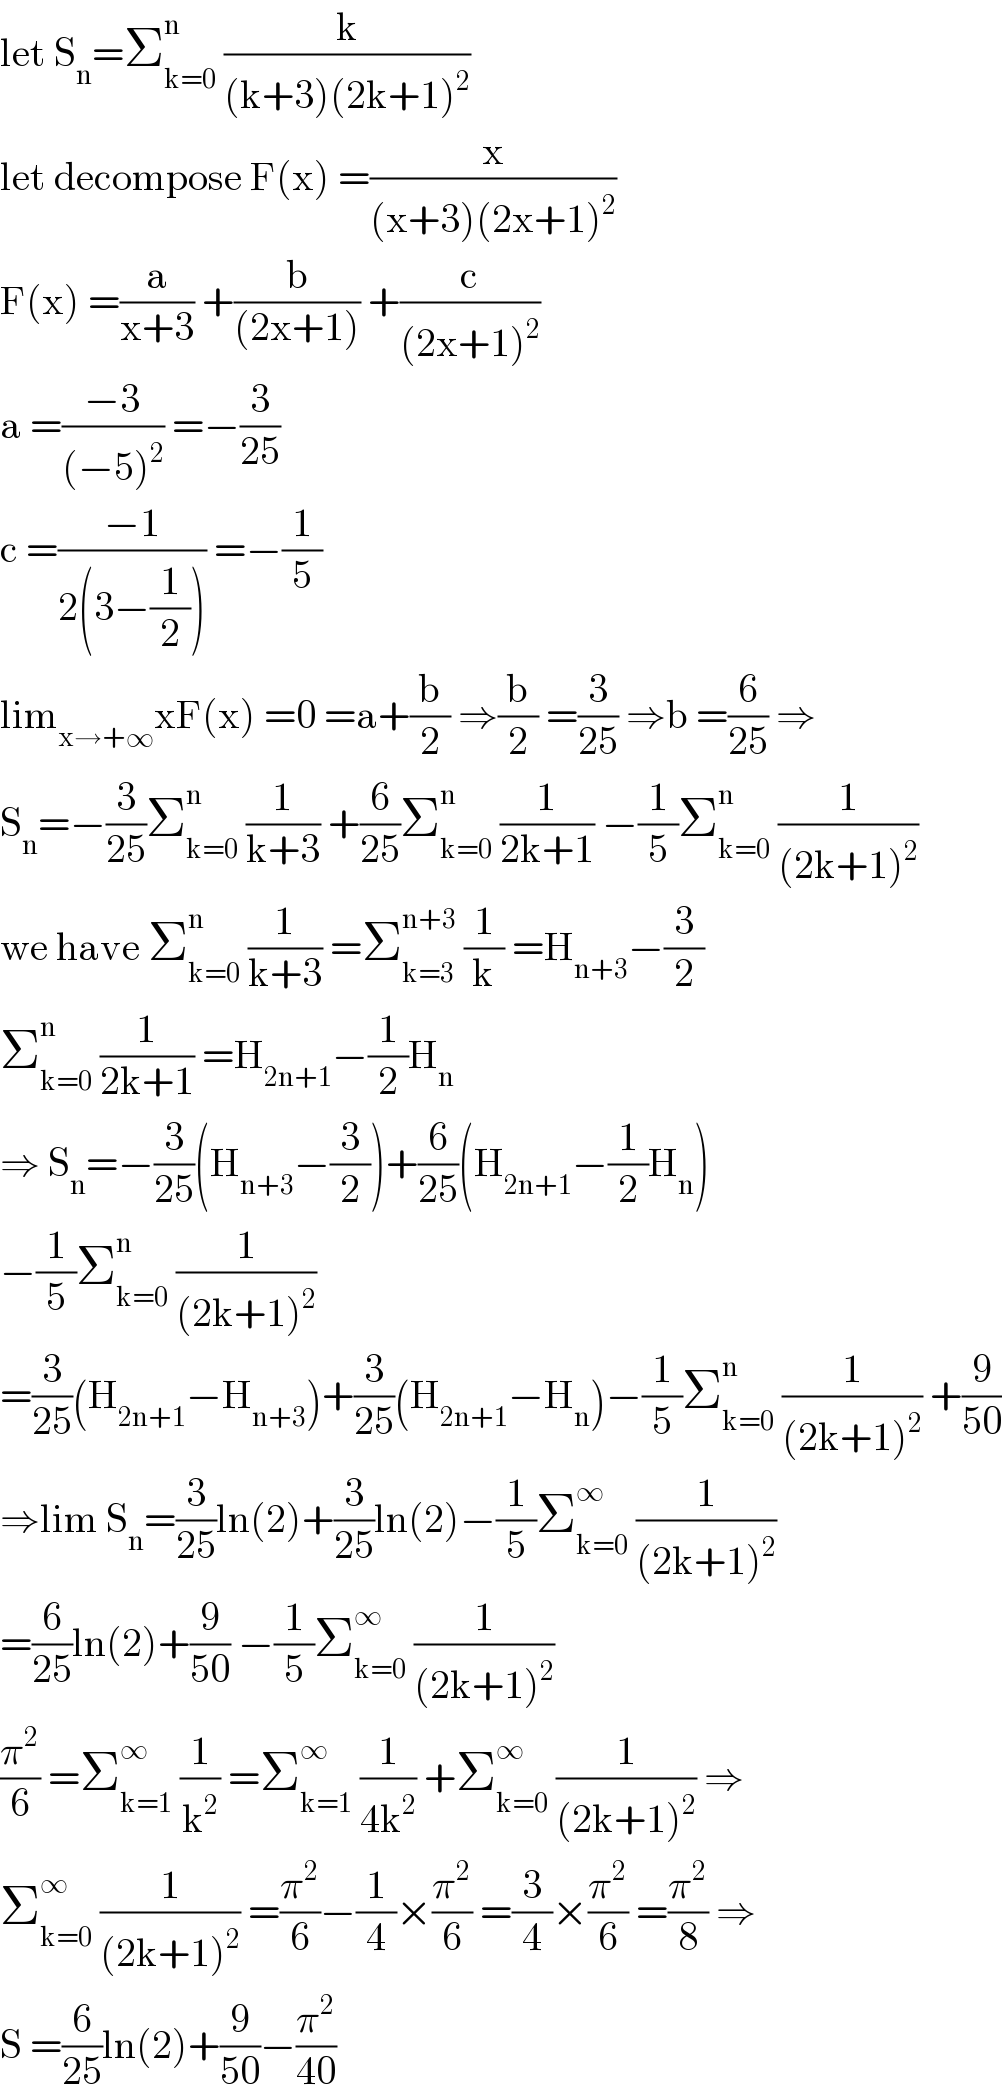 let S_n =Σ_(k=0) ^n  (k/((k+3)(2k+1)^2 ))   let decompose F(x) =(x/((x+3)(2x+1)^2 ))  F(x) =(a/(x+3)) +(b/((2x+1))) +(c/((2x+1)^2 ))  a =((−3)/((−5)^2 )) =−(3/(25))  c =((−1)/(2(3−(1/2)))) =−(1/5)  lim_(x→+∞) xF(x) =0 =a+(b/2) ⇒(b/2) =(3/(25)) ⇒b =(6/(25)) ⇒  S_n =−(3/(25))Σ_(k=0) ^n  (1/(k+3)) +(6/(25))Σ_(k=0) ^n  (1/(2k+1)) −(1/5)Σ_(k=0) ^n  (1/((2k+1)^2 ))  we have Σ_(k=0) ^n  (1/(k+3)) =Σ_(k=3) ^(n+3)  (1/k) =H_(n+3) −(3/2)  Σ_(k=0) ^n  (1/(2k+1)) =H_(2n+1) −(1/2)H_n   ⇒ S_n =−(3/(25))(H_(n+3) −(3/2))+(6/(25))(H_(2n+1) −(1/2)H_n )  −(1/5)Σ_(k=0) ^n  (1/((2k+1)^2 ))  =(3/(25))(H_(2n+1) −H_(n+3) )+(3/(25))(H_(2n+1) −H_n )−(1/5)Σ_(k=0) ^n  (1/((2k+1)^2 )) +(9/(50))  ⇒lim S_n =(3/(25))ln(2)+(3/(25))ln(2)−(1/5)Σ_(k=0) ^∞  (1/((2k+1)^2 ))  =(6/(25))ln(2)+(9/(50)) −(1/5)Σ_(k=0) ^∞  (1/((2k+1)^2 ))  (π^2 /6) =Σ_(k=1) ^∞  (1/k^2 ) =Σ_(k=1) ^∞  (1/(4k^2 )) +Σ_(k=0) ^∞  (1/((2k+1)^2 )) ⇒  Σ_(k=0) ^∞  (1/((2k+1)^2 )) =(π^2 /6)−(1/4)×(π^2 /6) =(3/4)×(π^2 /6) =(π^2 /8) ⇒  S =(6/(25))ln(2)+(9/(50))−(π^2 /(40))  